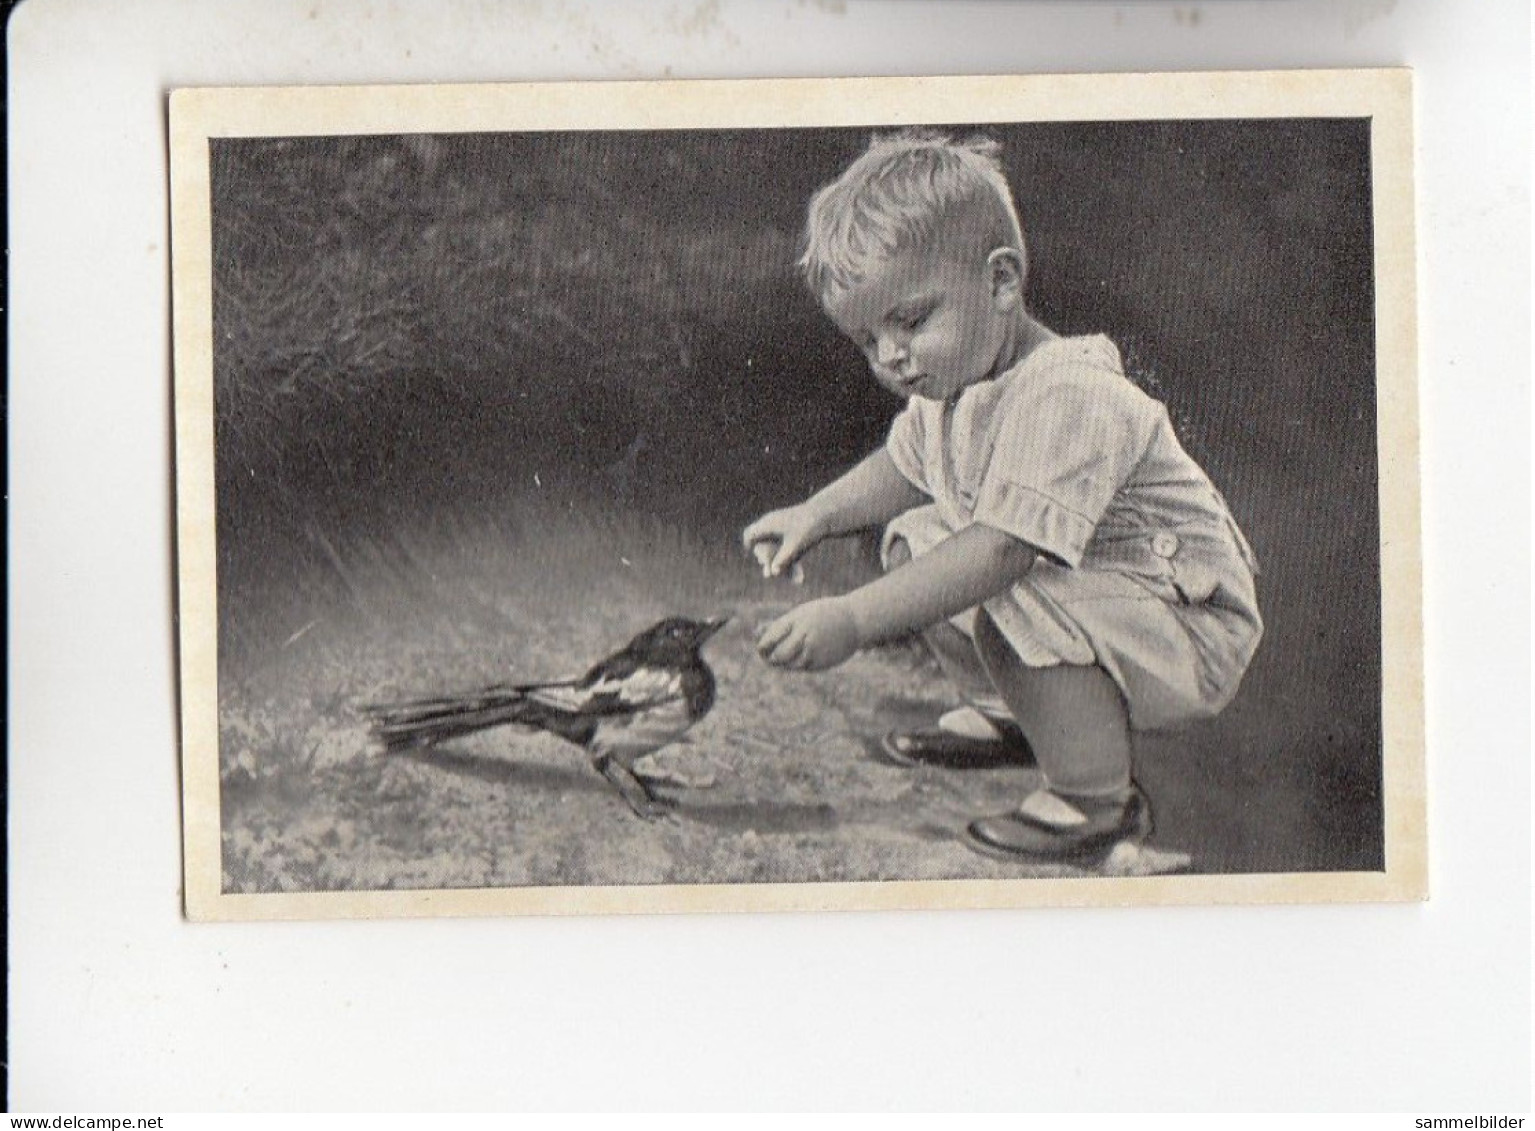 Mit Trumpf Durch Alle Welt Tiere Und Kinder I Junge Mit Elster    C Serie 10 # 3 Von 1934 - Zigarettenmarken